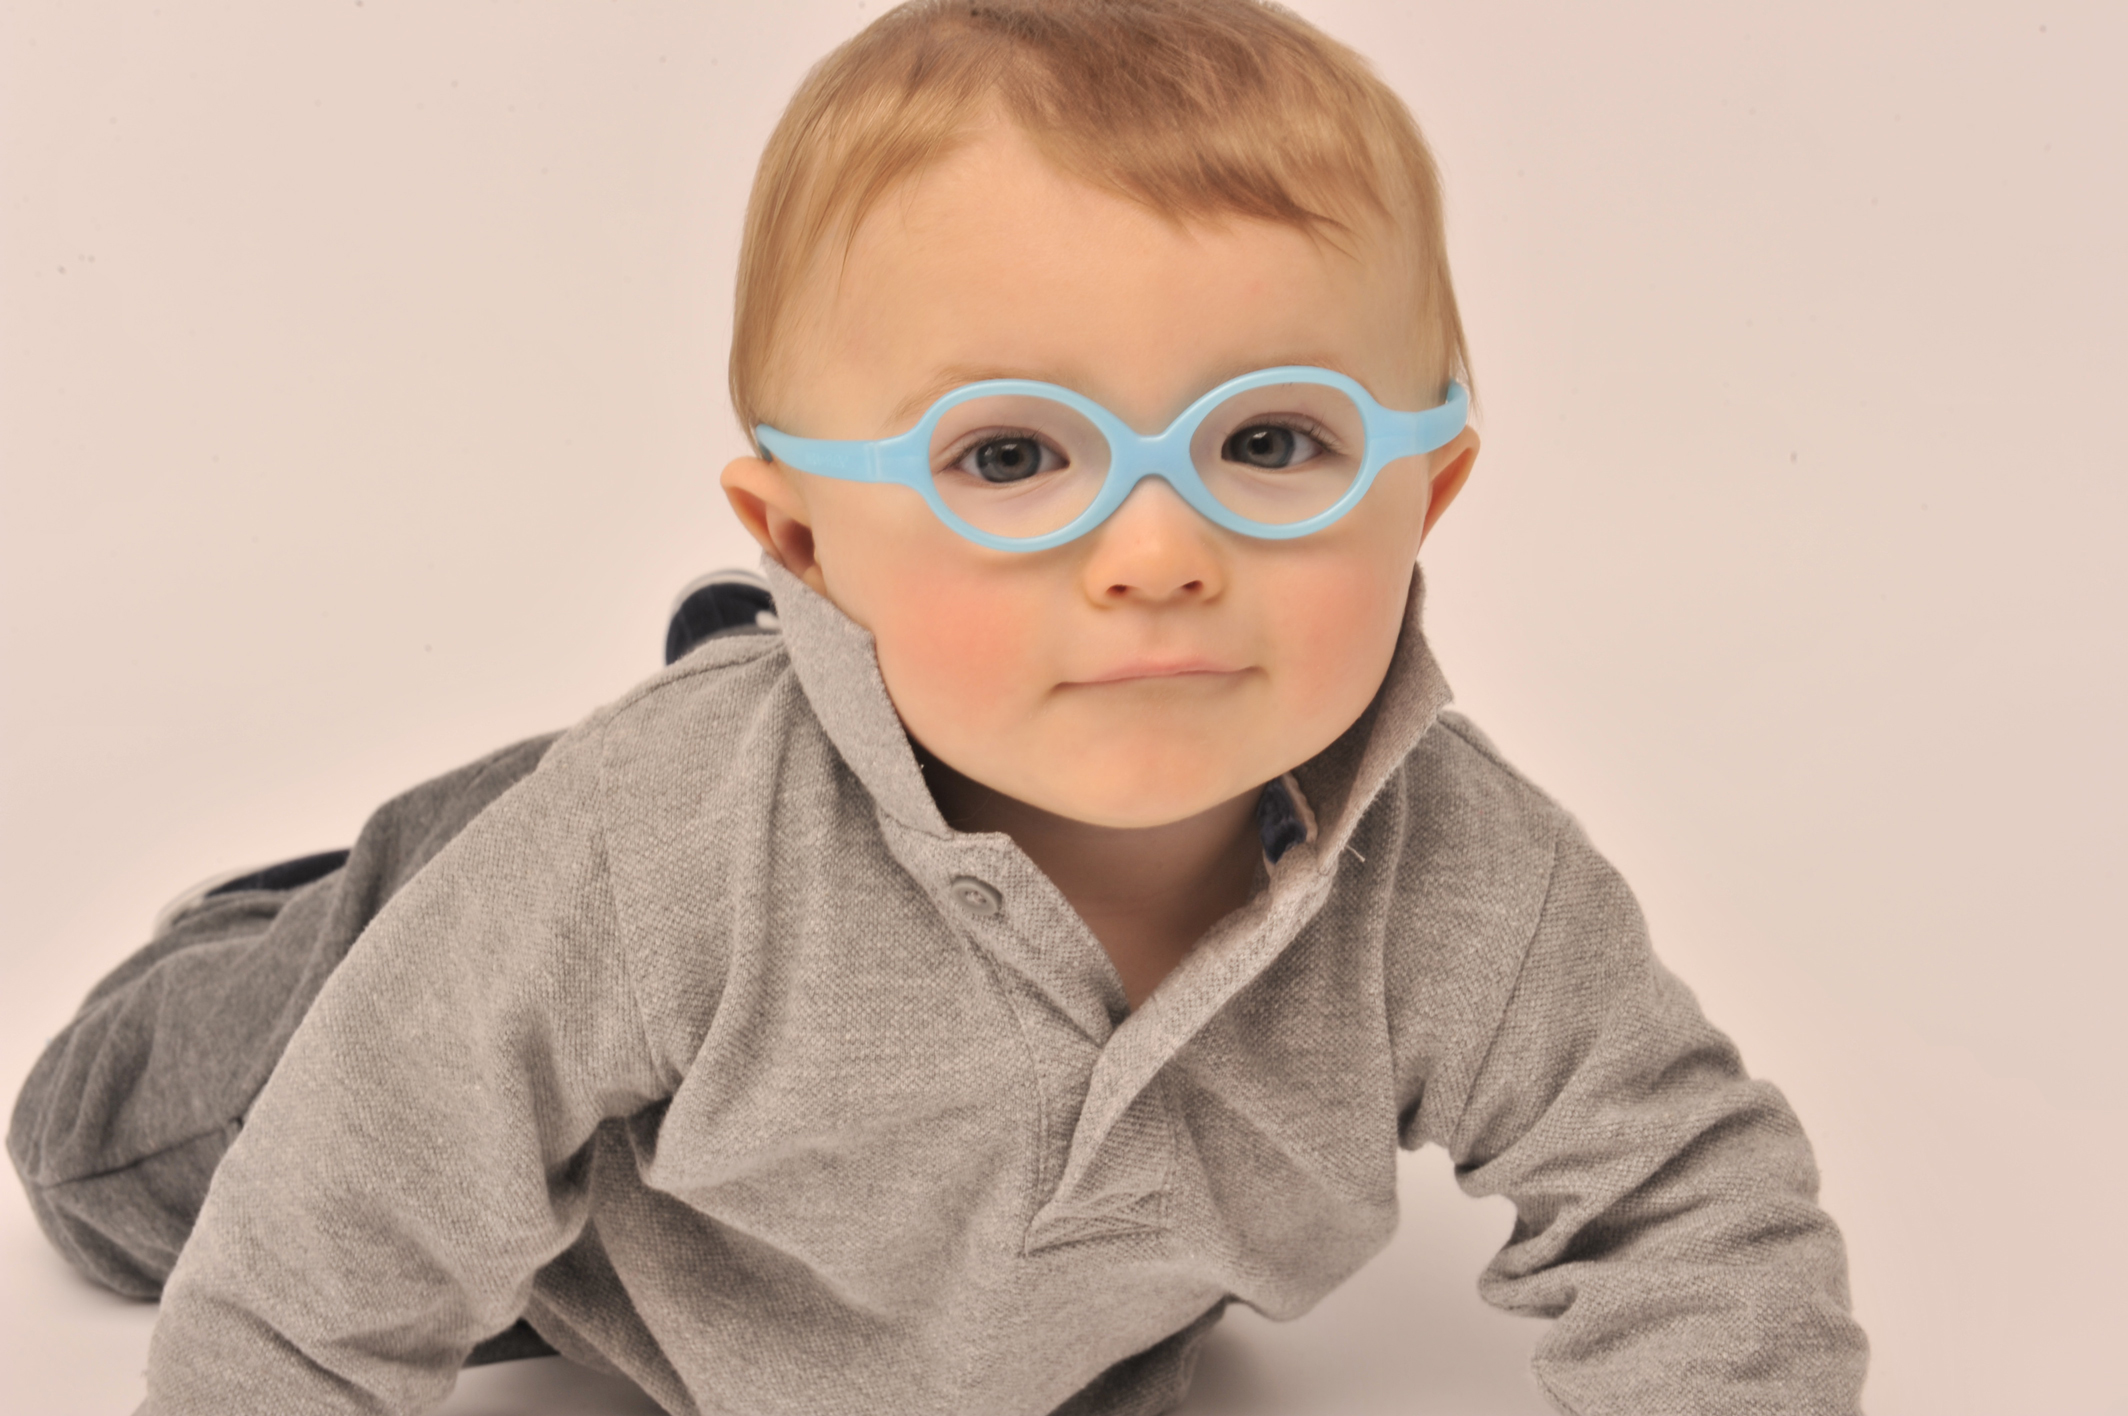 Infant boy wearing blue rubber eyeglasses frames